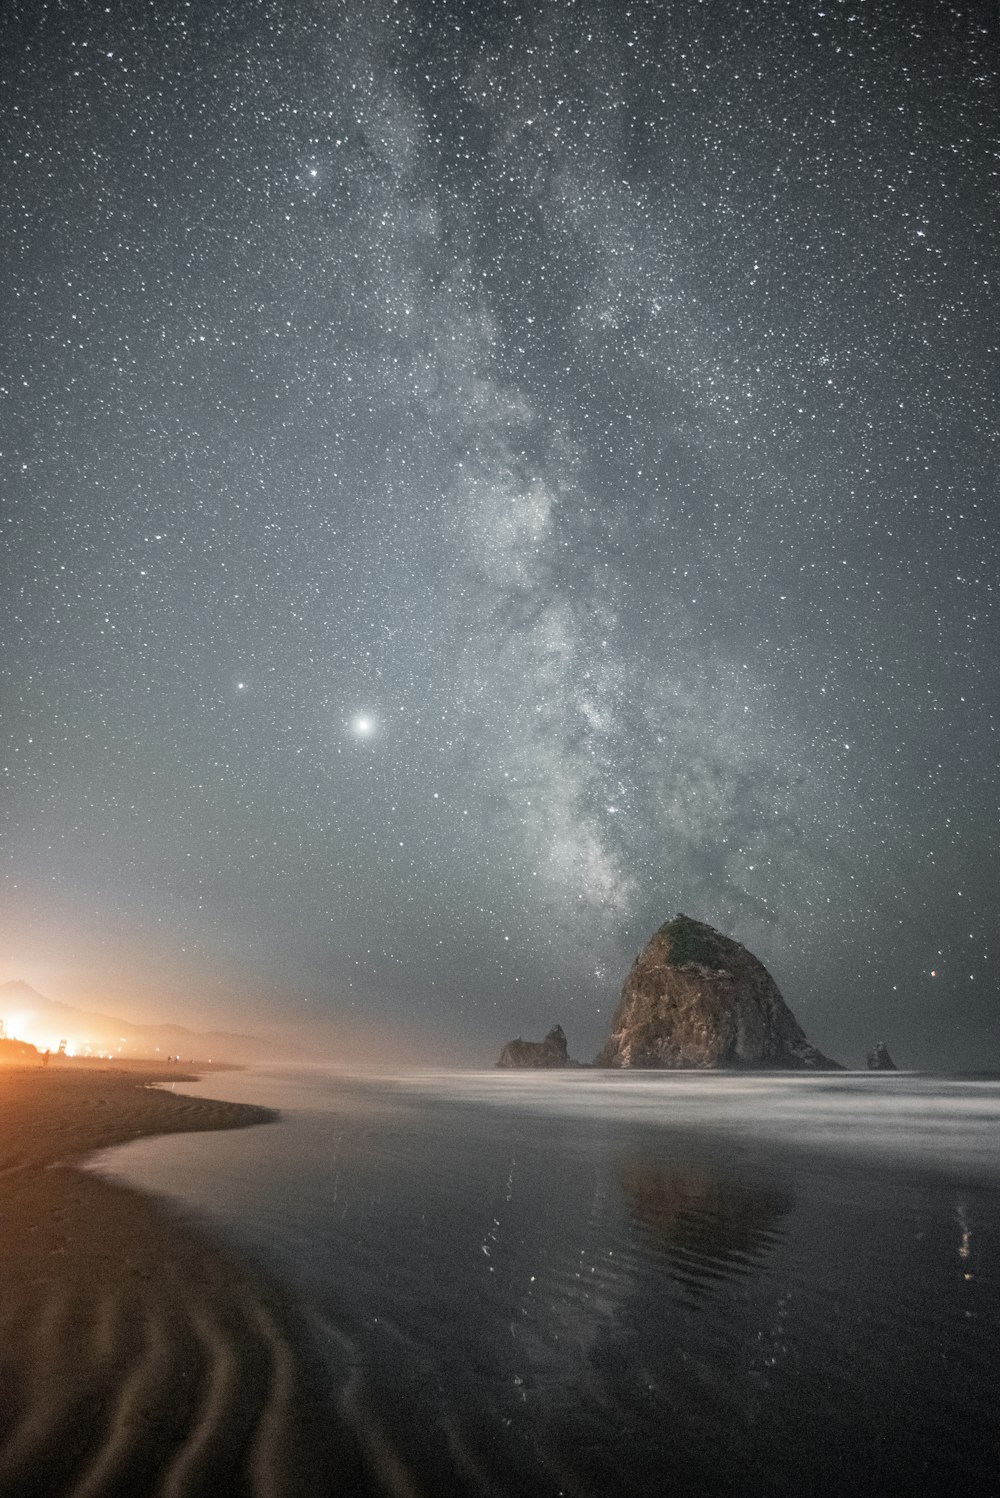 별이 빛나는 밤 아래 바닷가에 갈색 암석 형성